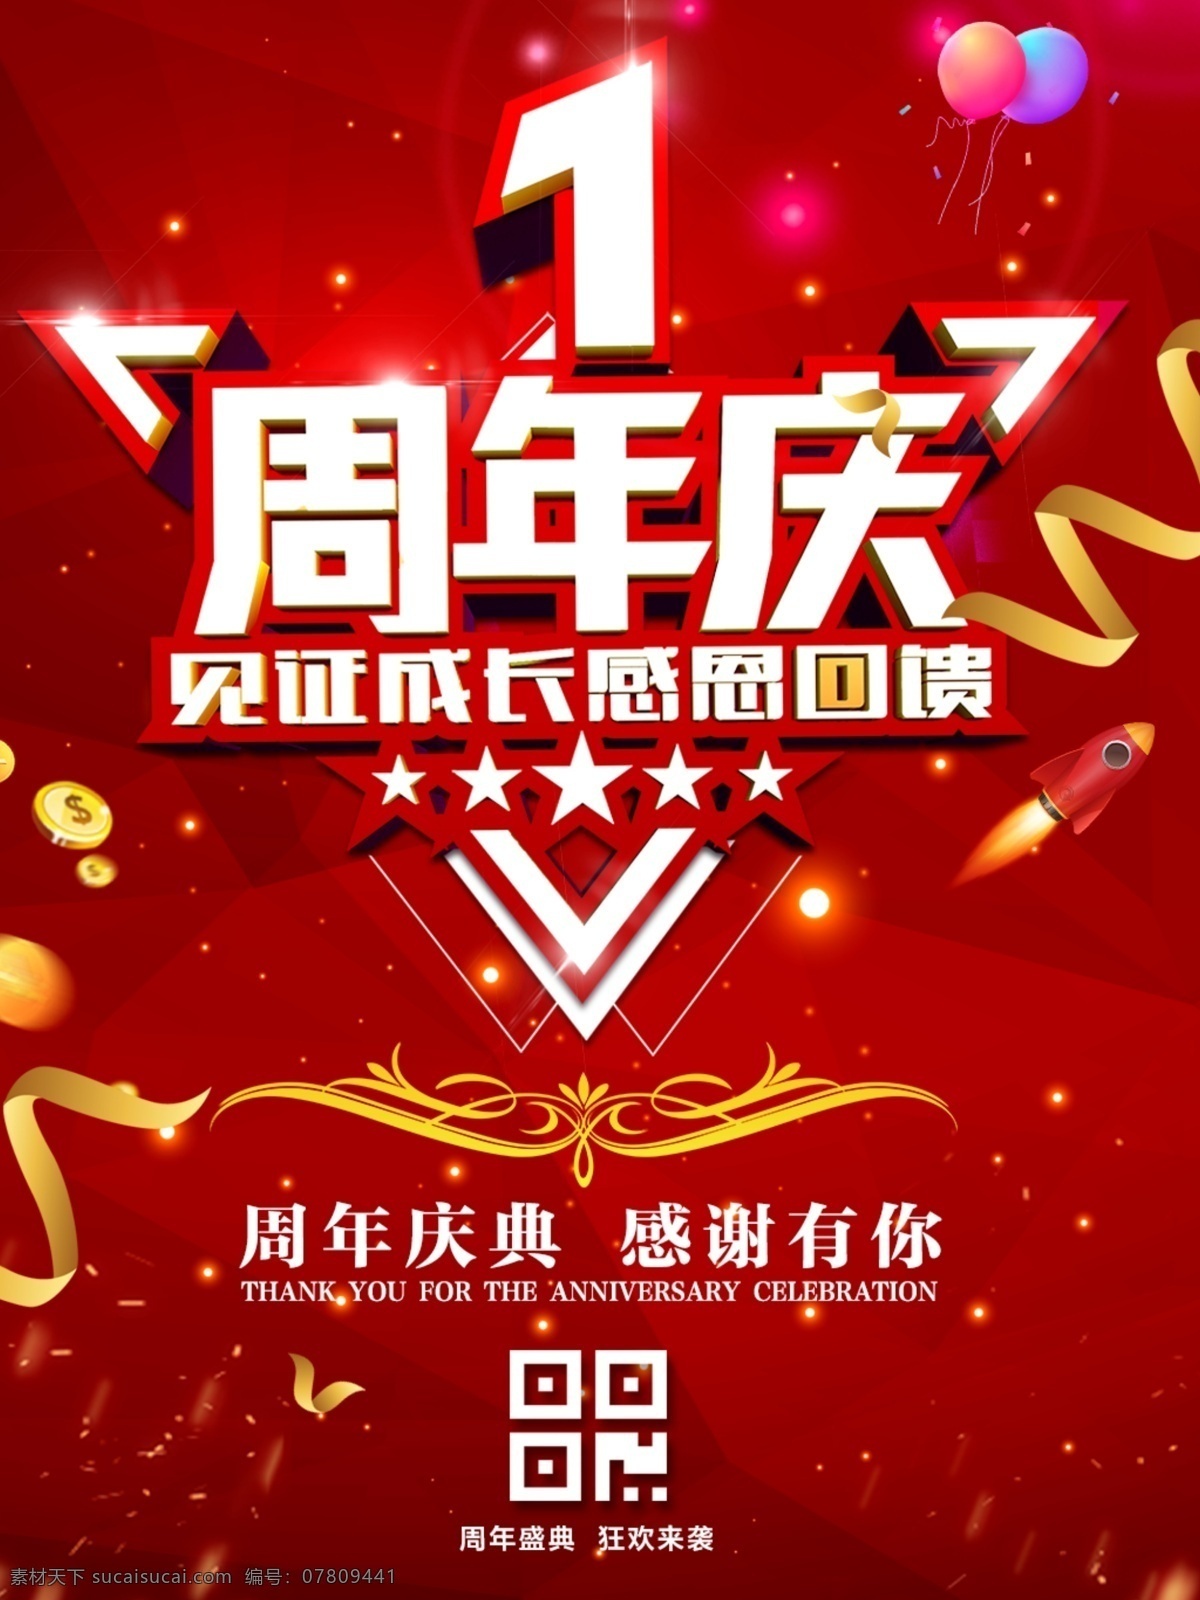 1周年庆海报 1周年庆 周年庆 海报 喜庆背景 红底背景 周年庆海报